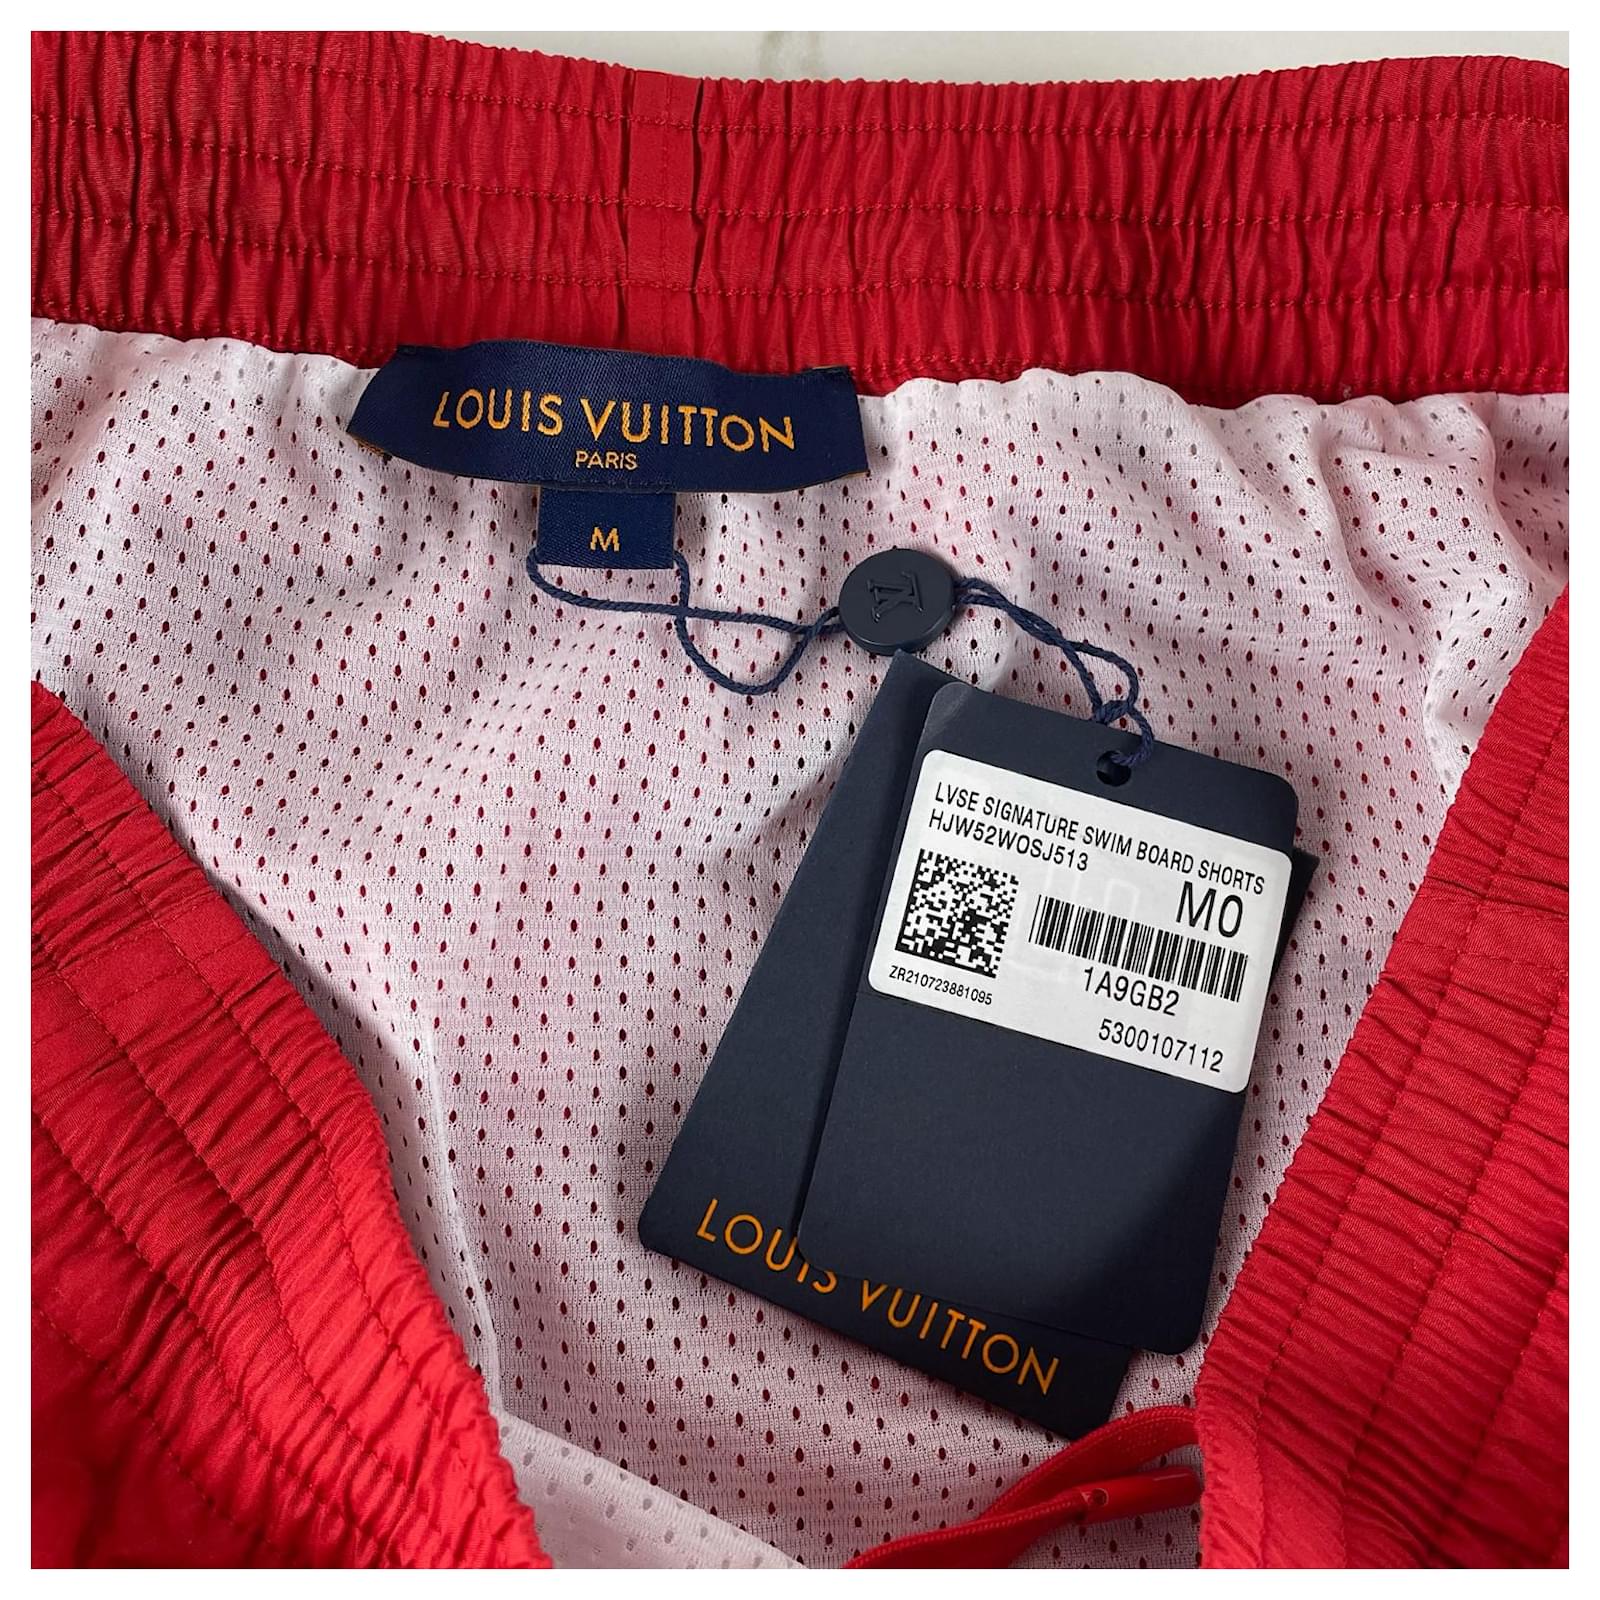 NWOT Louis Vuitton Monogram Men Swimming Trunk Shorts LV Sz Large